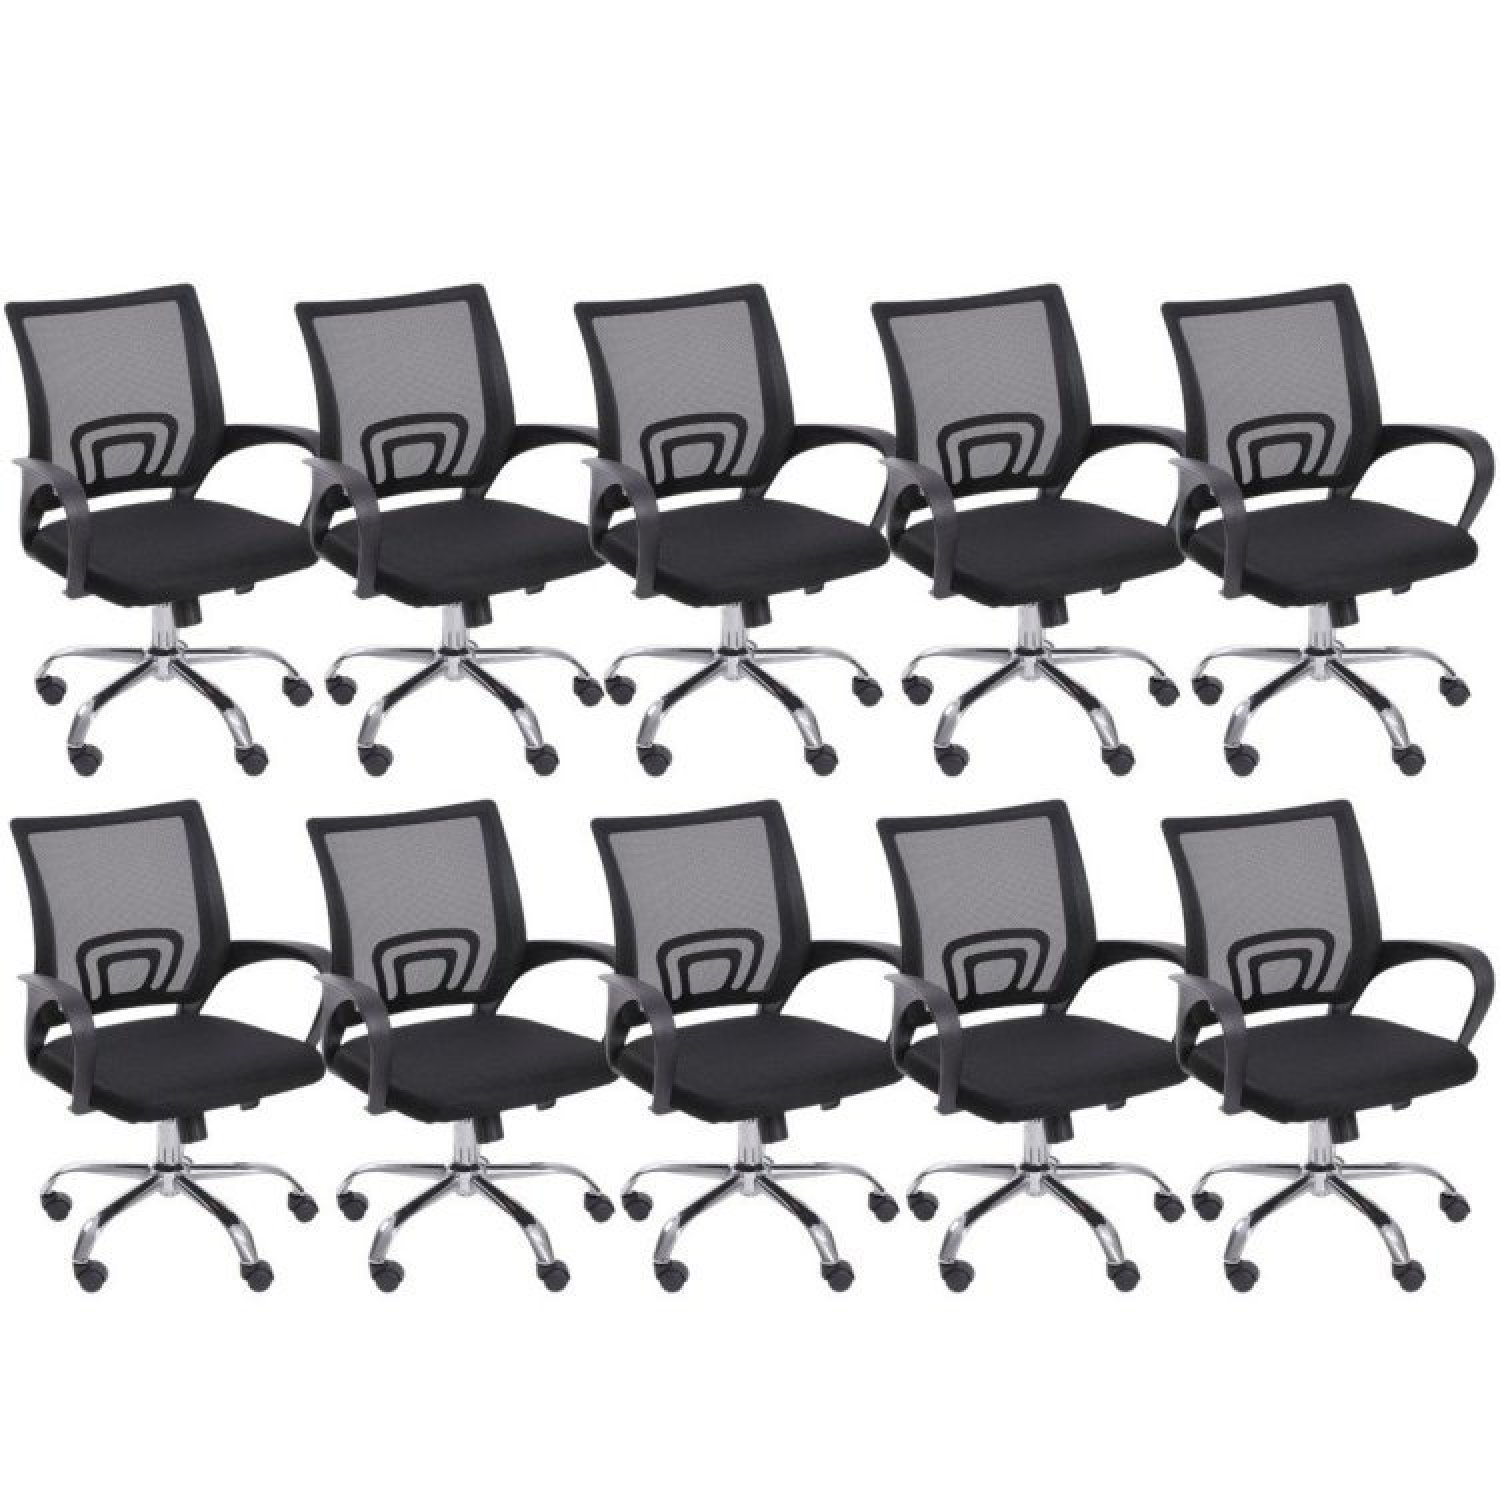 Kit 10 Cadeiras para Escritório Diretor Giratória com Relax Tok 3310 OR Design